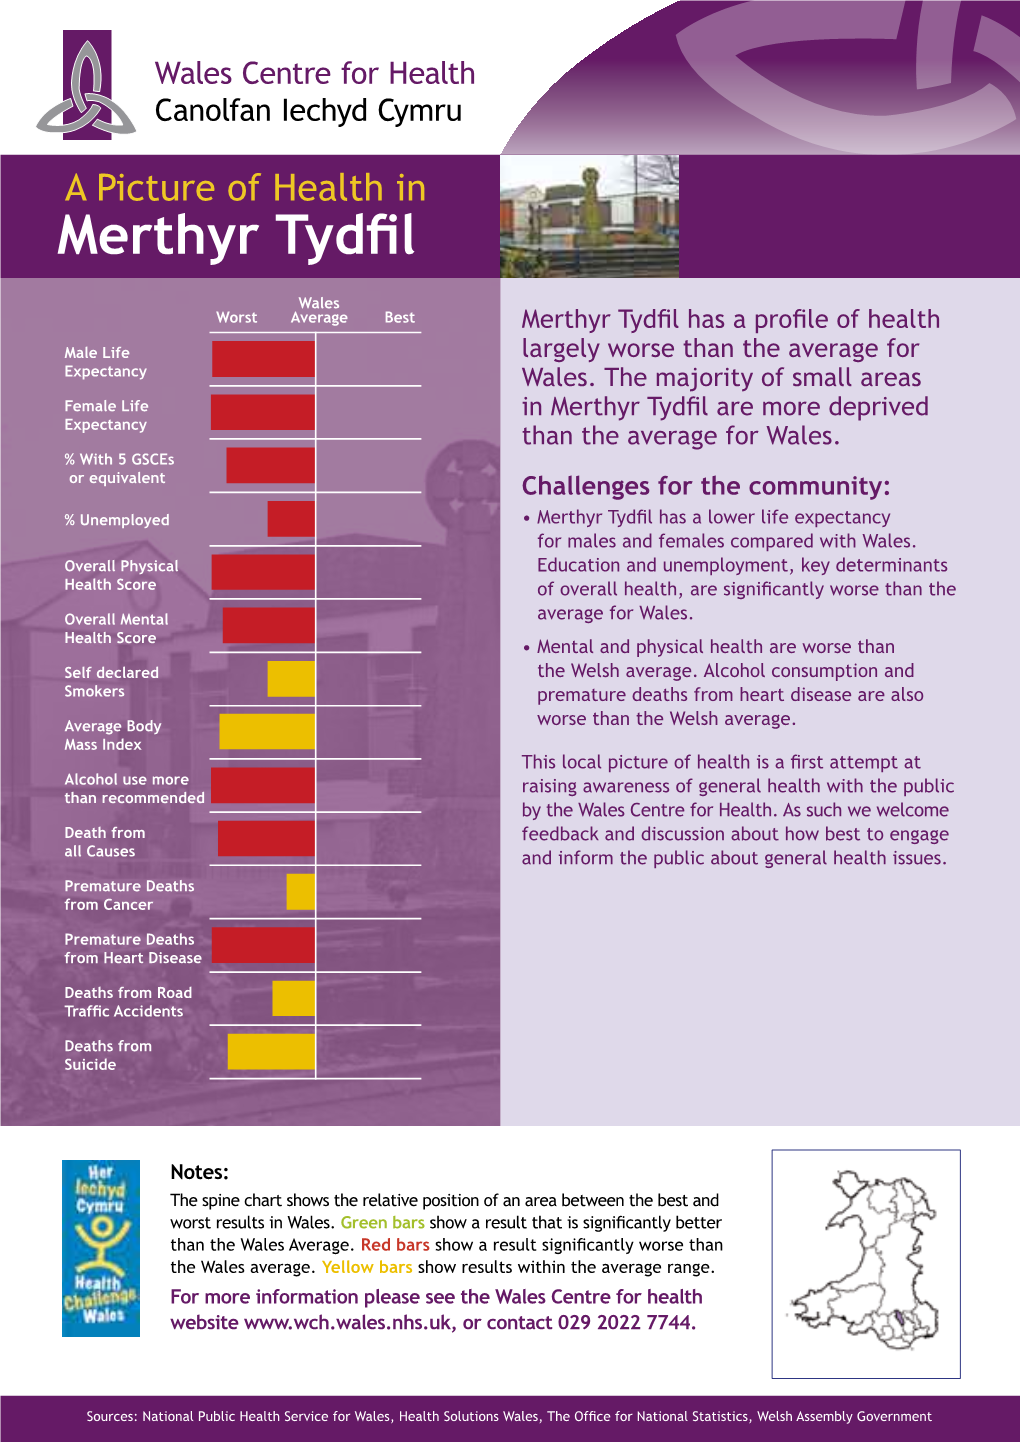 Merthyr Tydfil